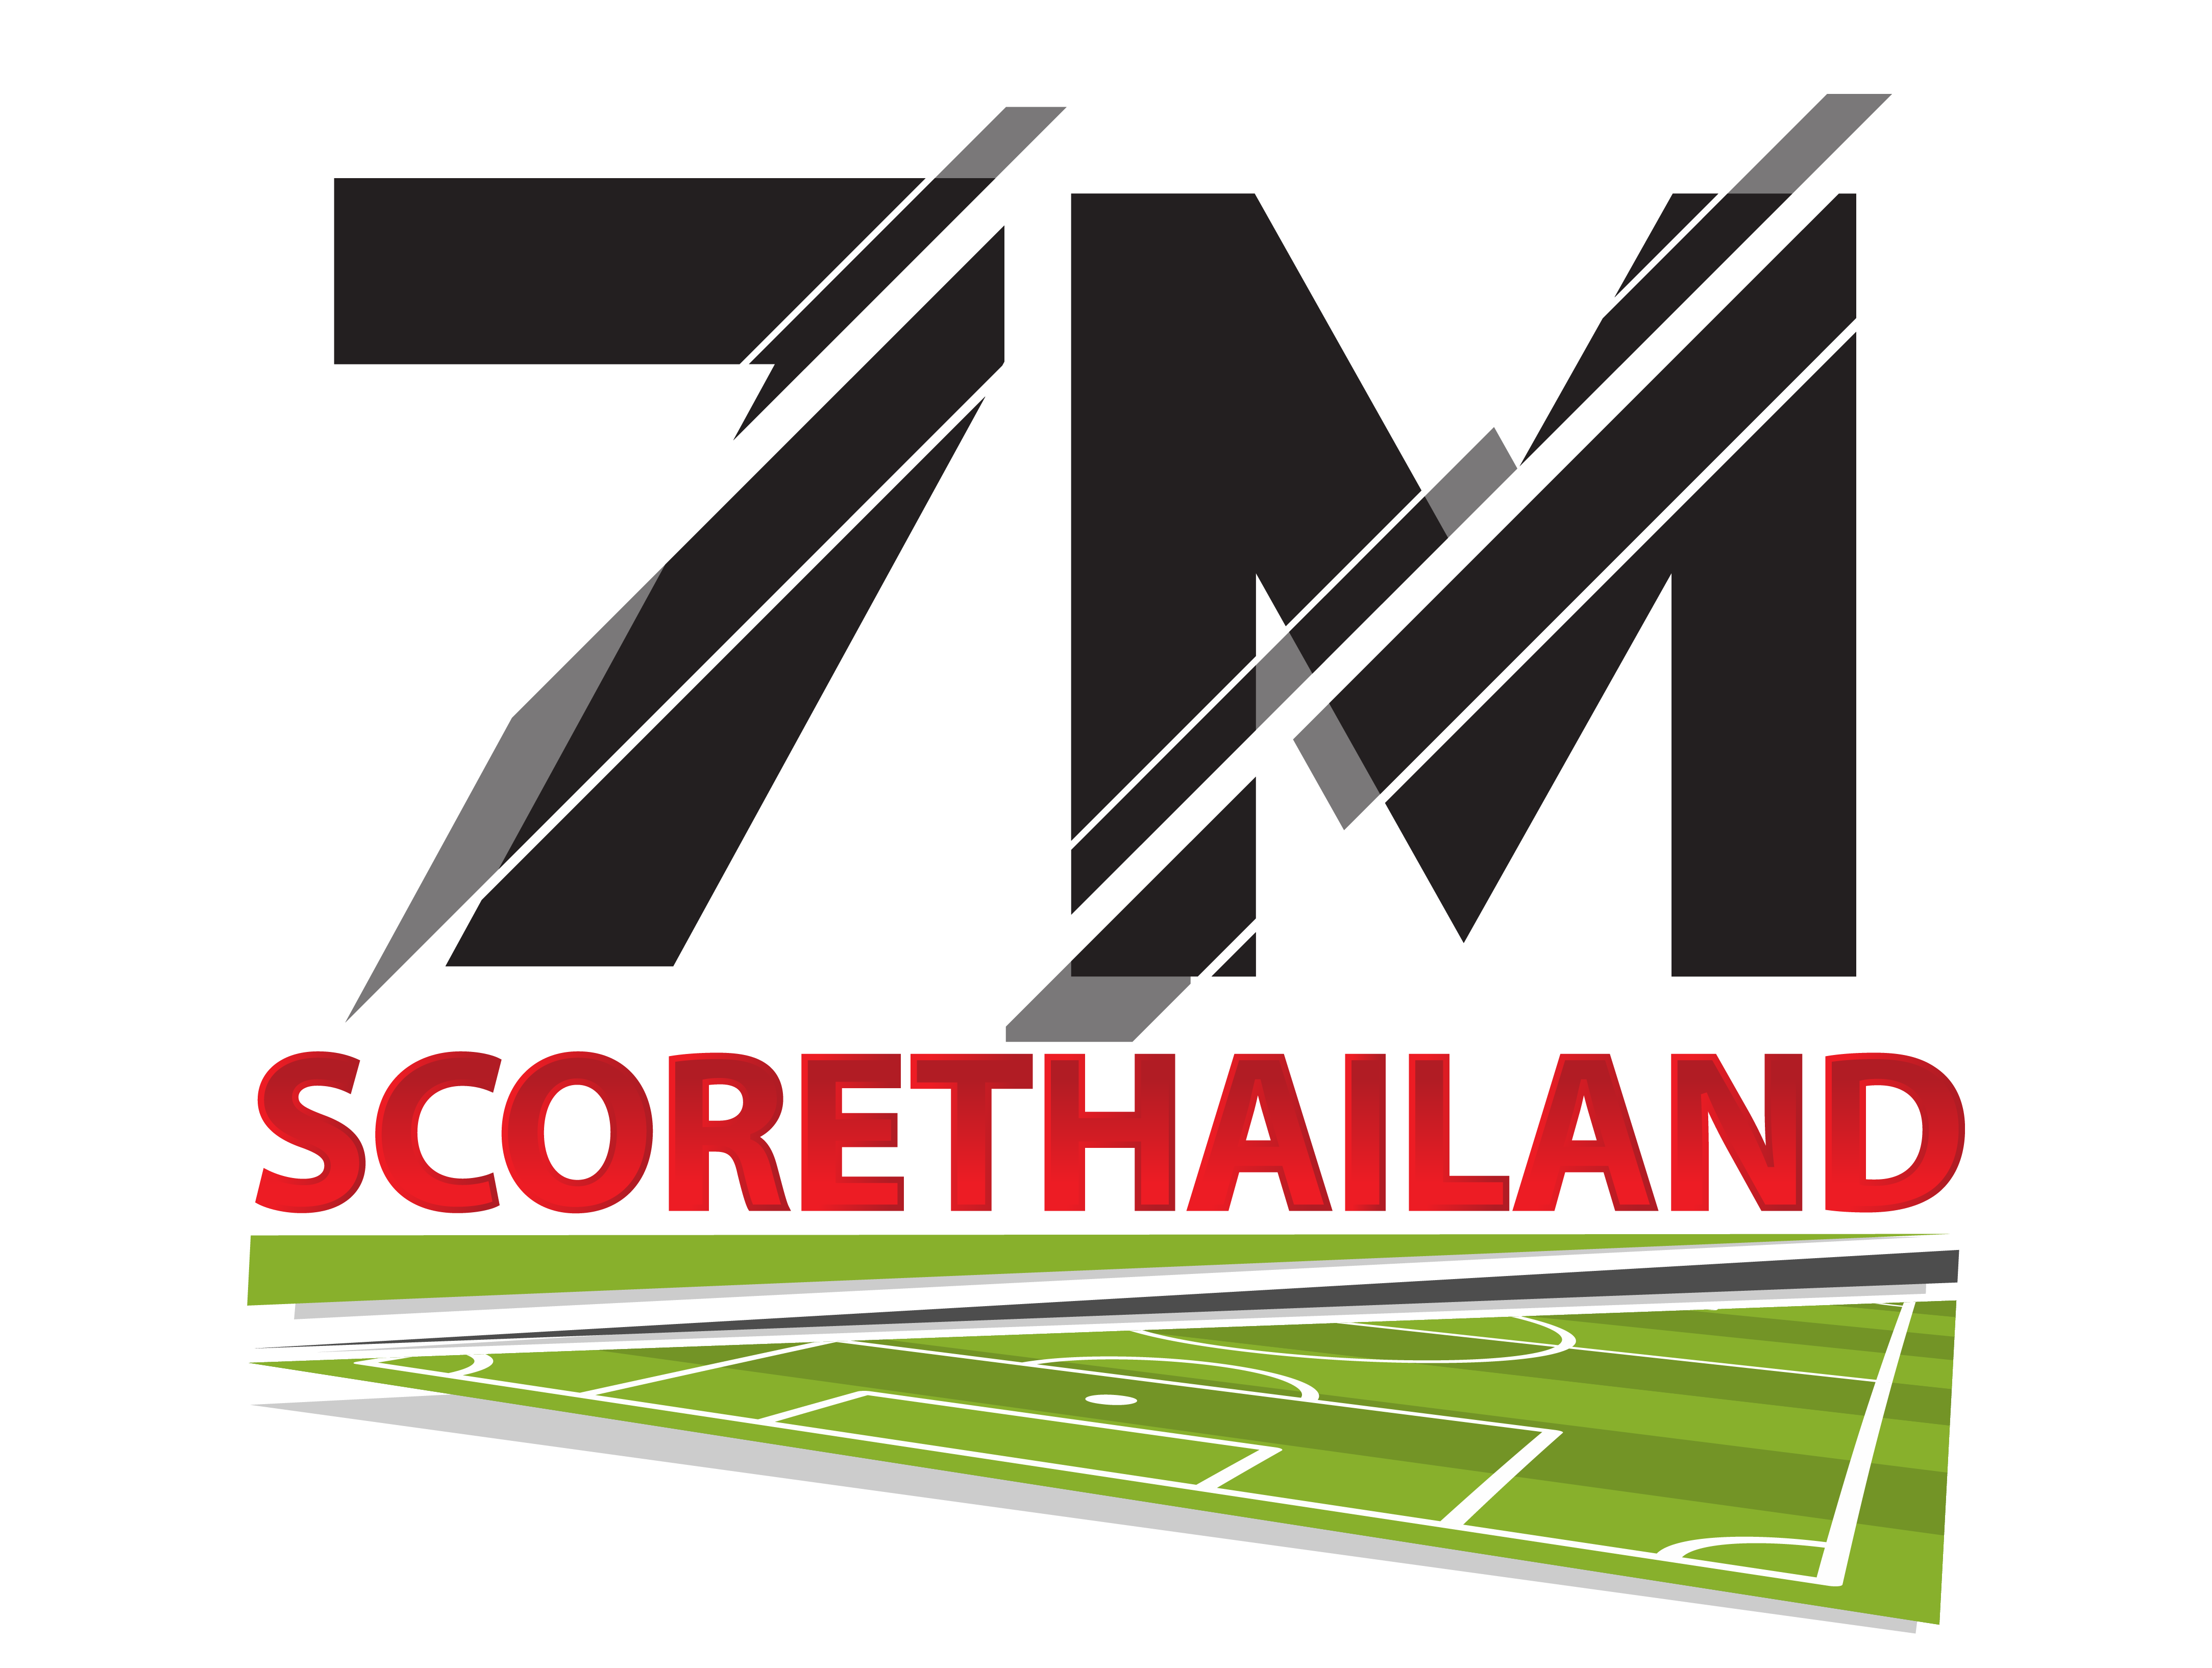 7mscorethailand 7m ผลบอลสด เช็คผลบอลล่าสุด